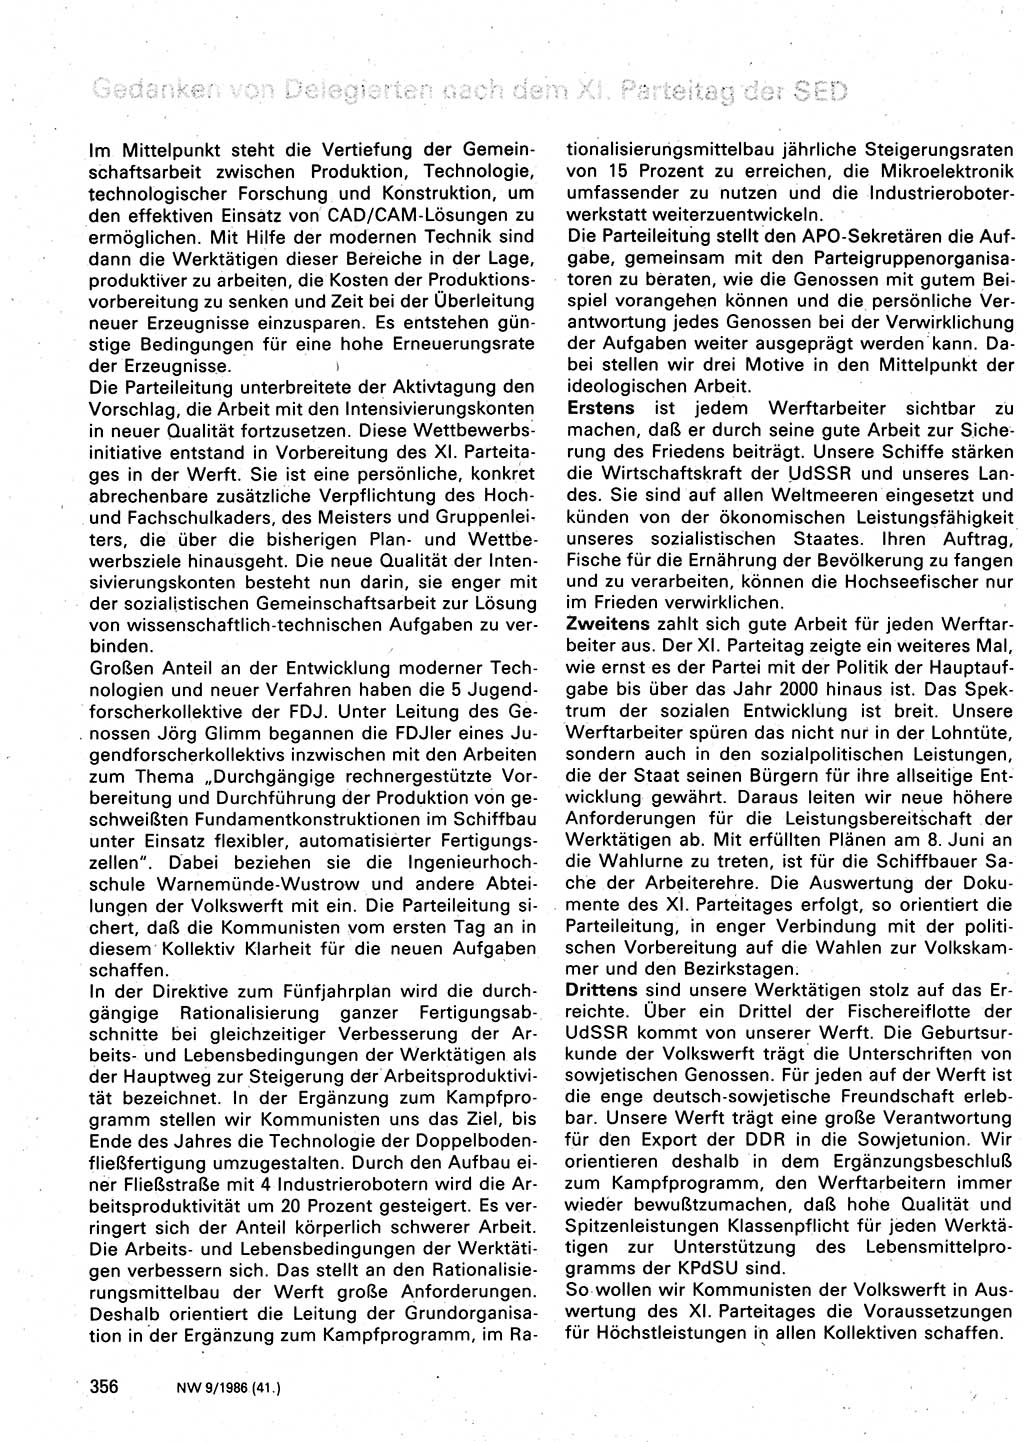 Neuer Weg (NW), Organ des Zentralkomitees (ZK) der SED (Sozialistische Einheitspartei Deutschlands) für Fragen des Parteilebens, 41. Jahrgang [Deutsche Demokratische Republik (DDR)] 1986, Seite 356 (NW ZK SED DDR 1986, S. 356)